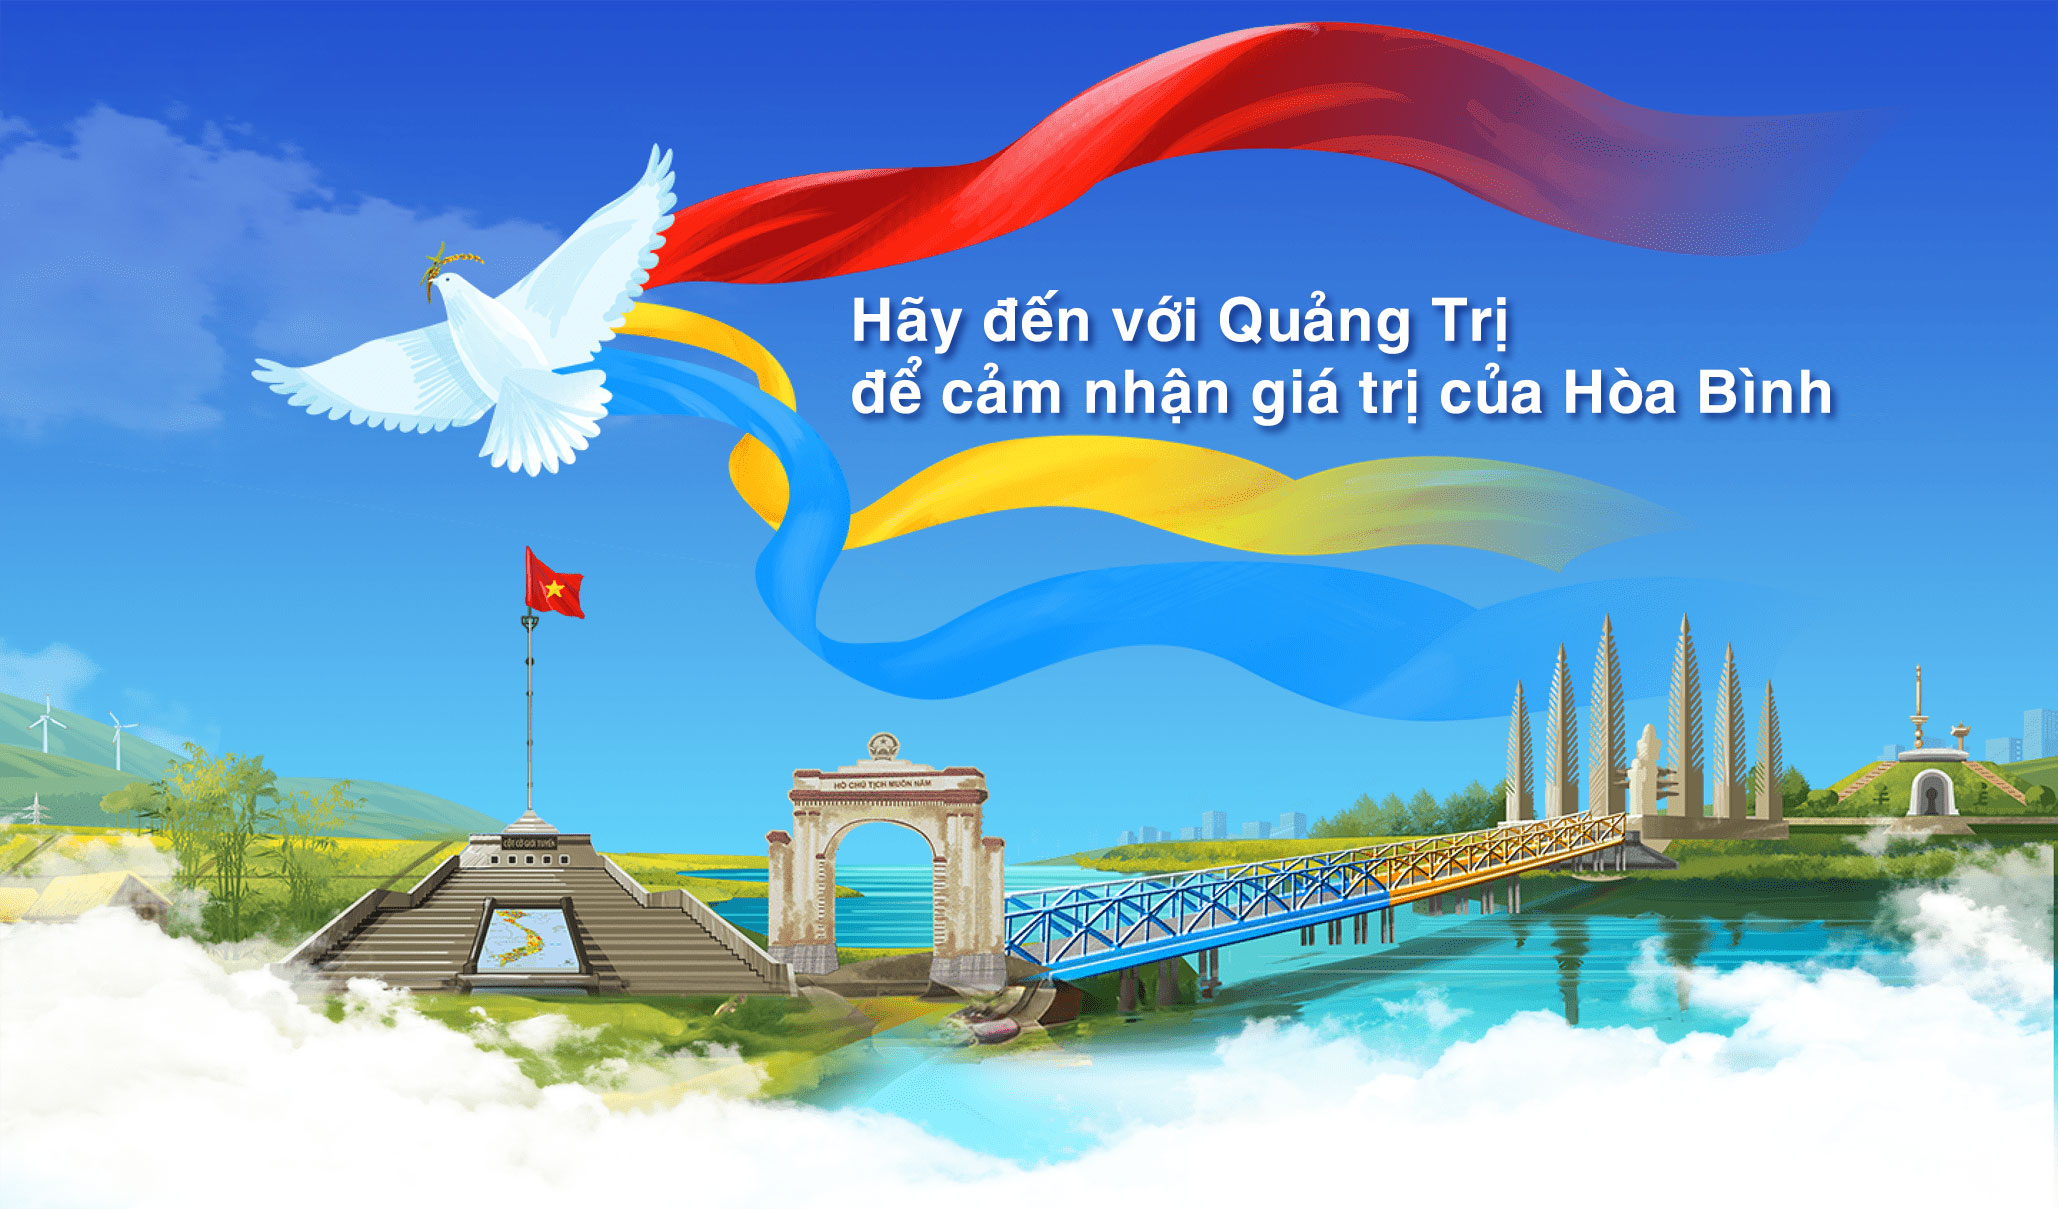 Hãy đến với Quảng Trị để cảm nhận giá trị của Hòa Bình